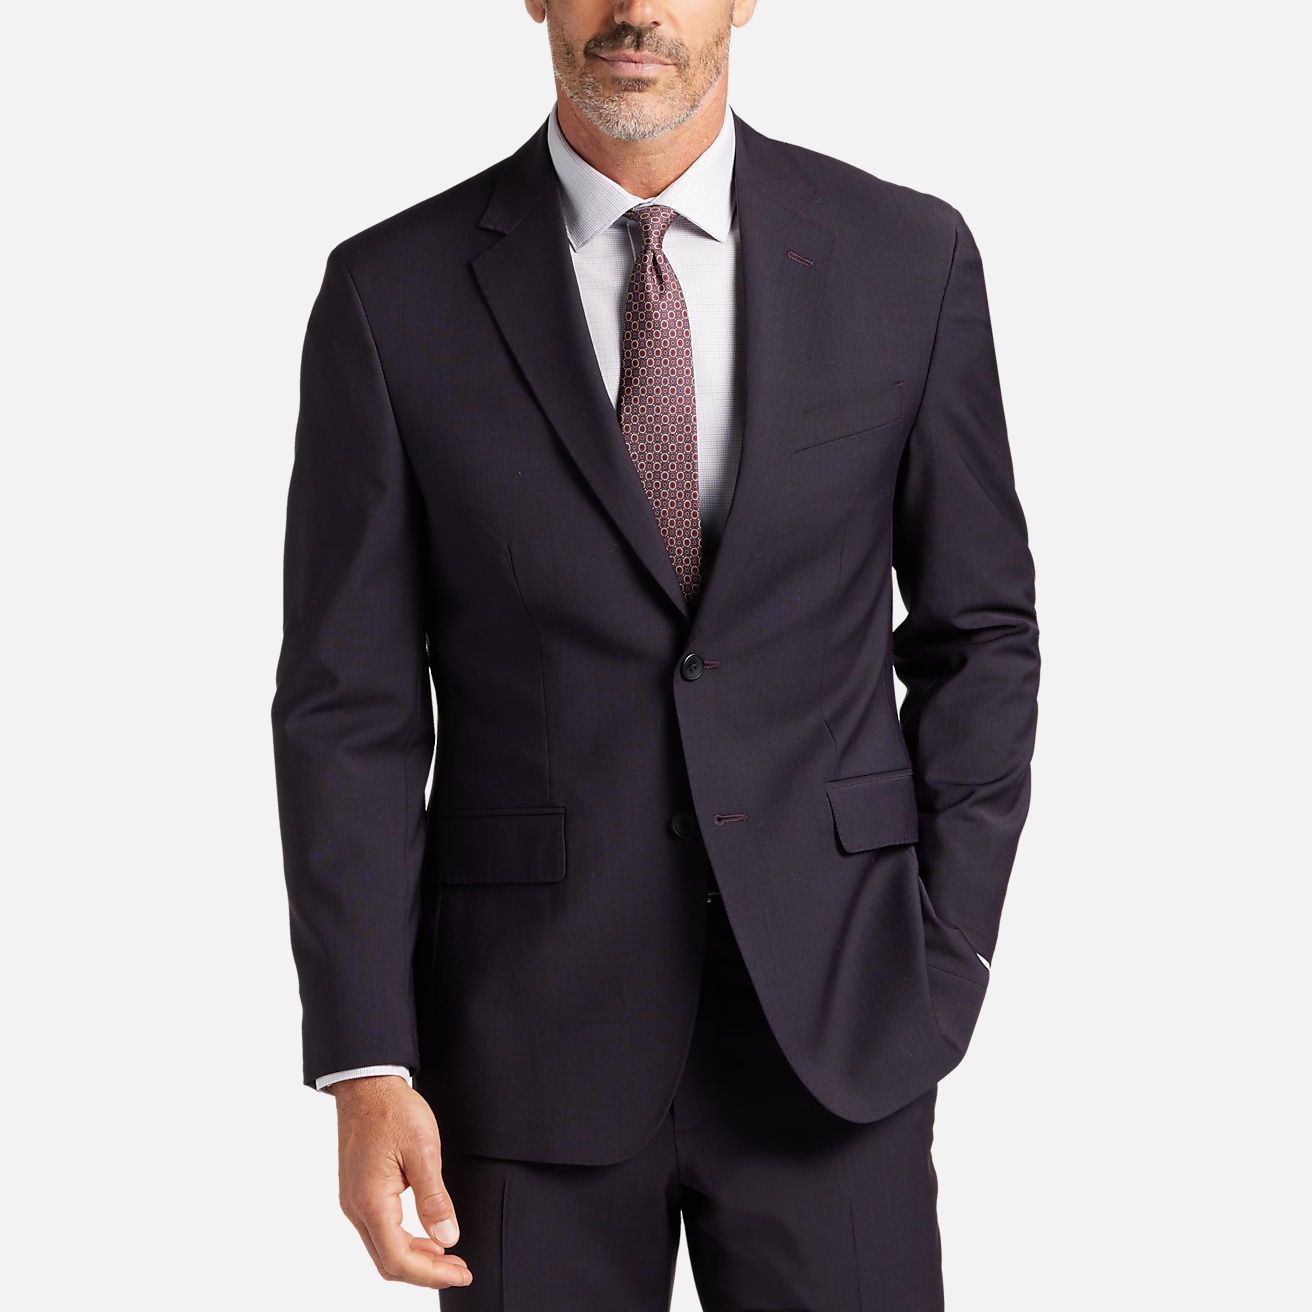 Calvin Klein Slim Fit Linen-Blend Suit Separates Jacket | All Sale| Men's  Wearhouse